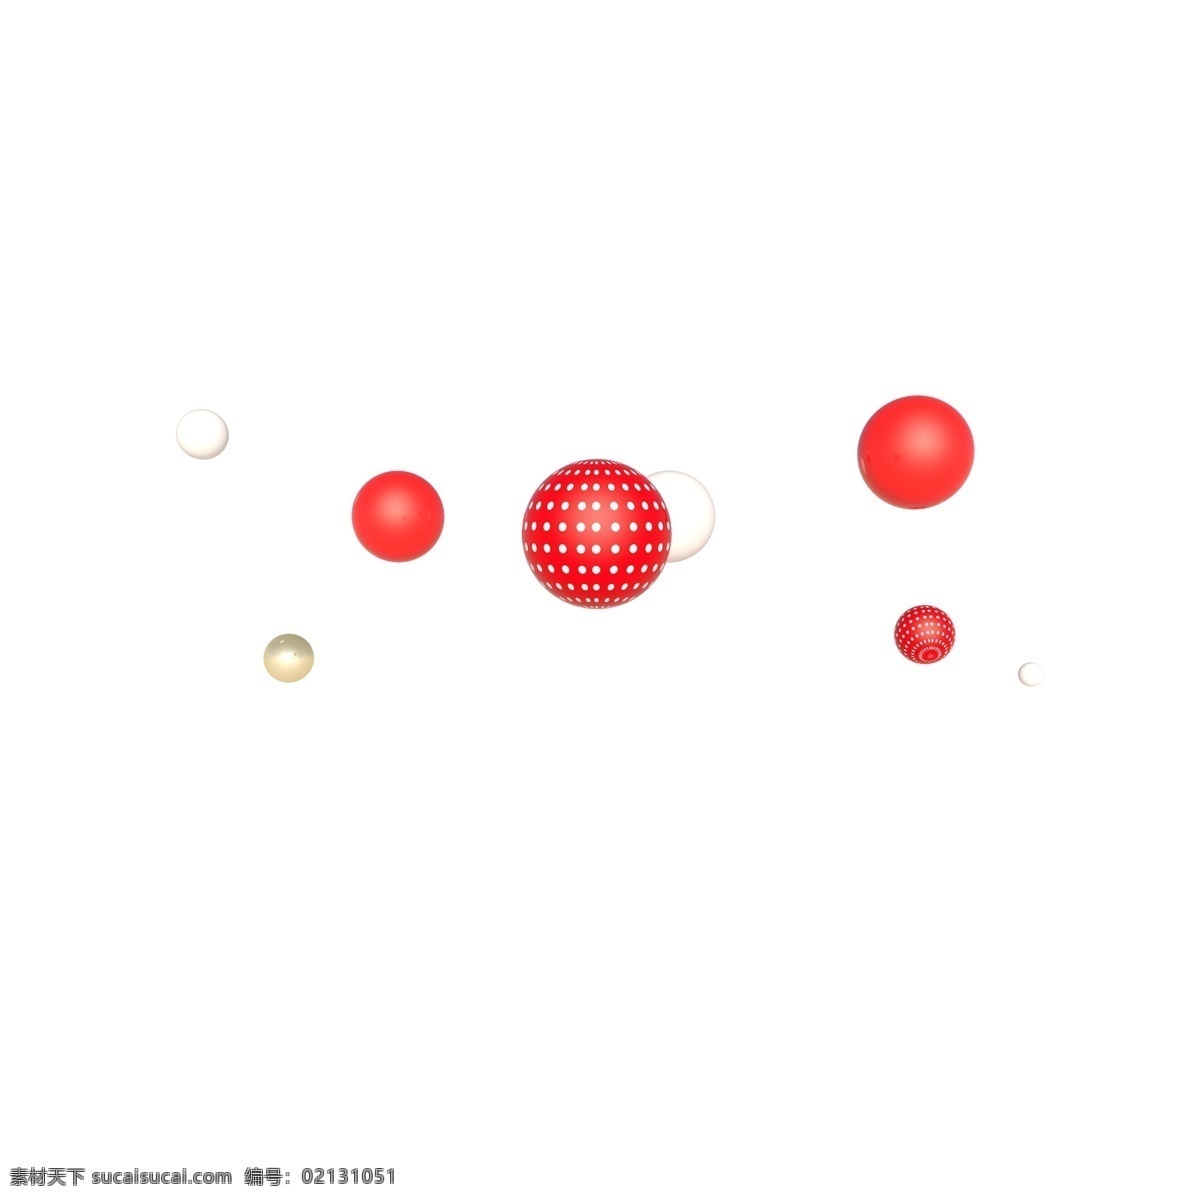 c4d 立体 波 点 漂浮 球 波点 漂浮球 红色 红白点 电商 海报 首页 装饰 活动 促销 3d球